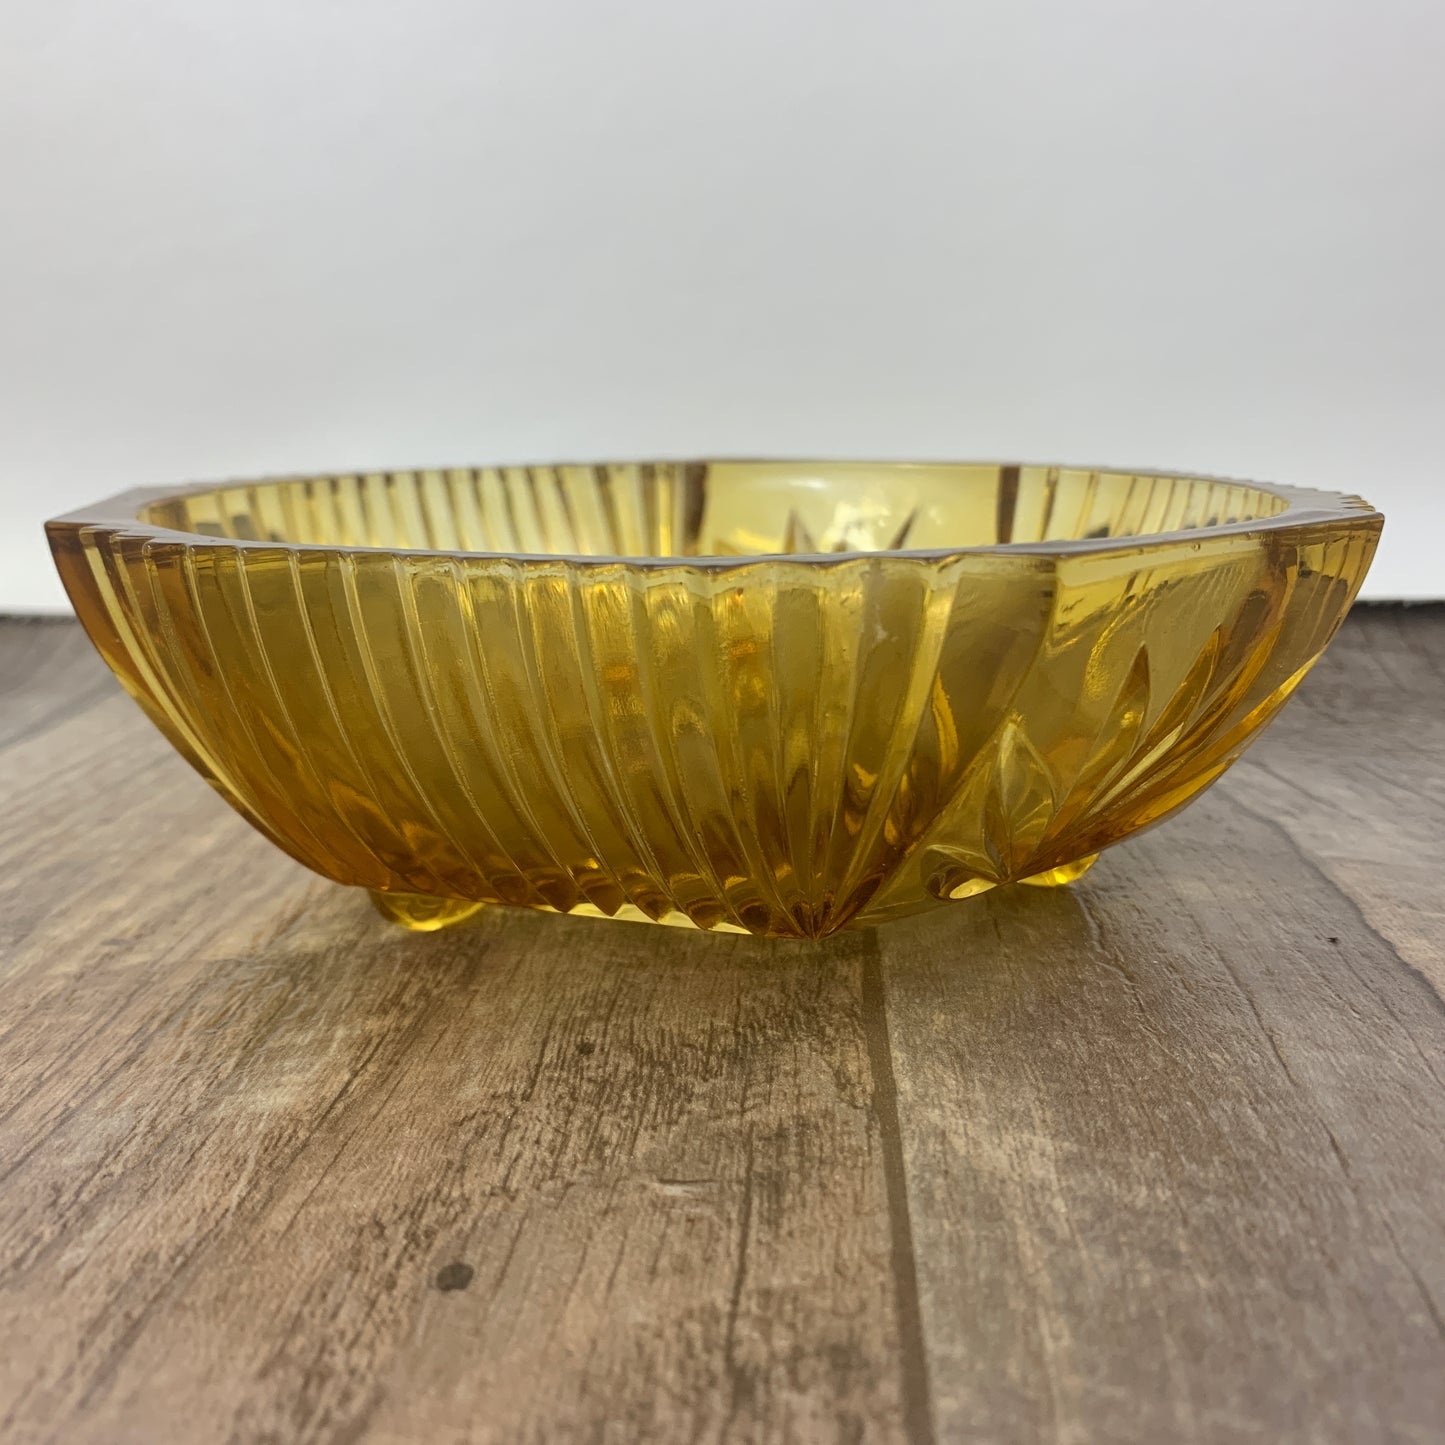 Amber Glass Bowl, Vintage Pressed Glass Serving Bowl, Vintage Home